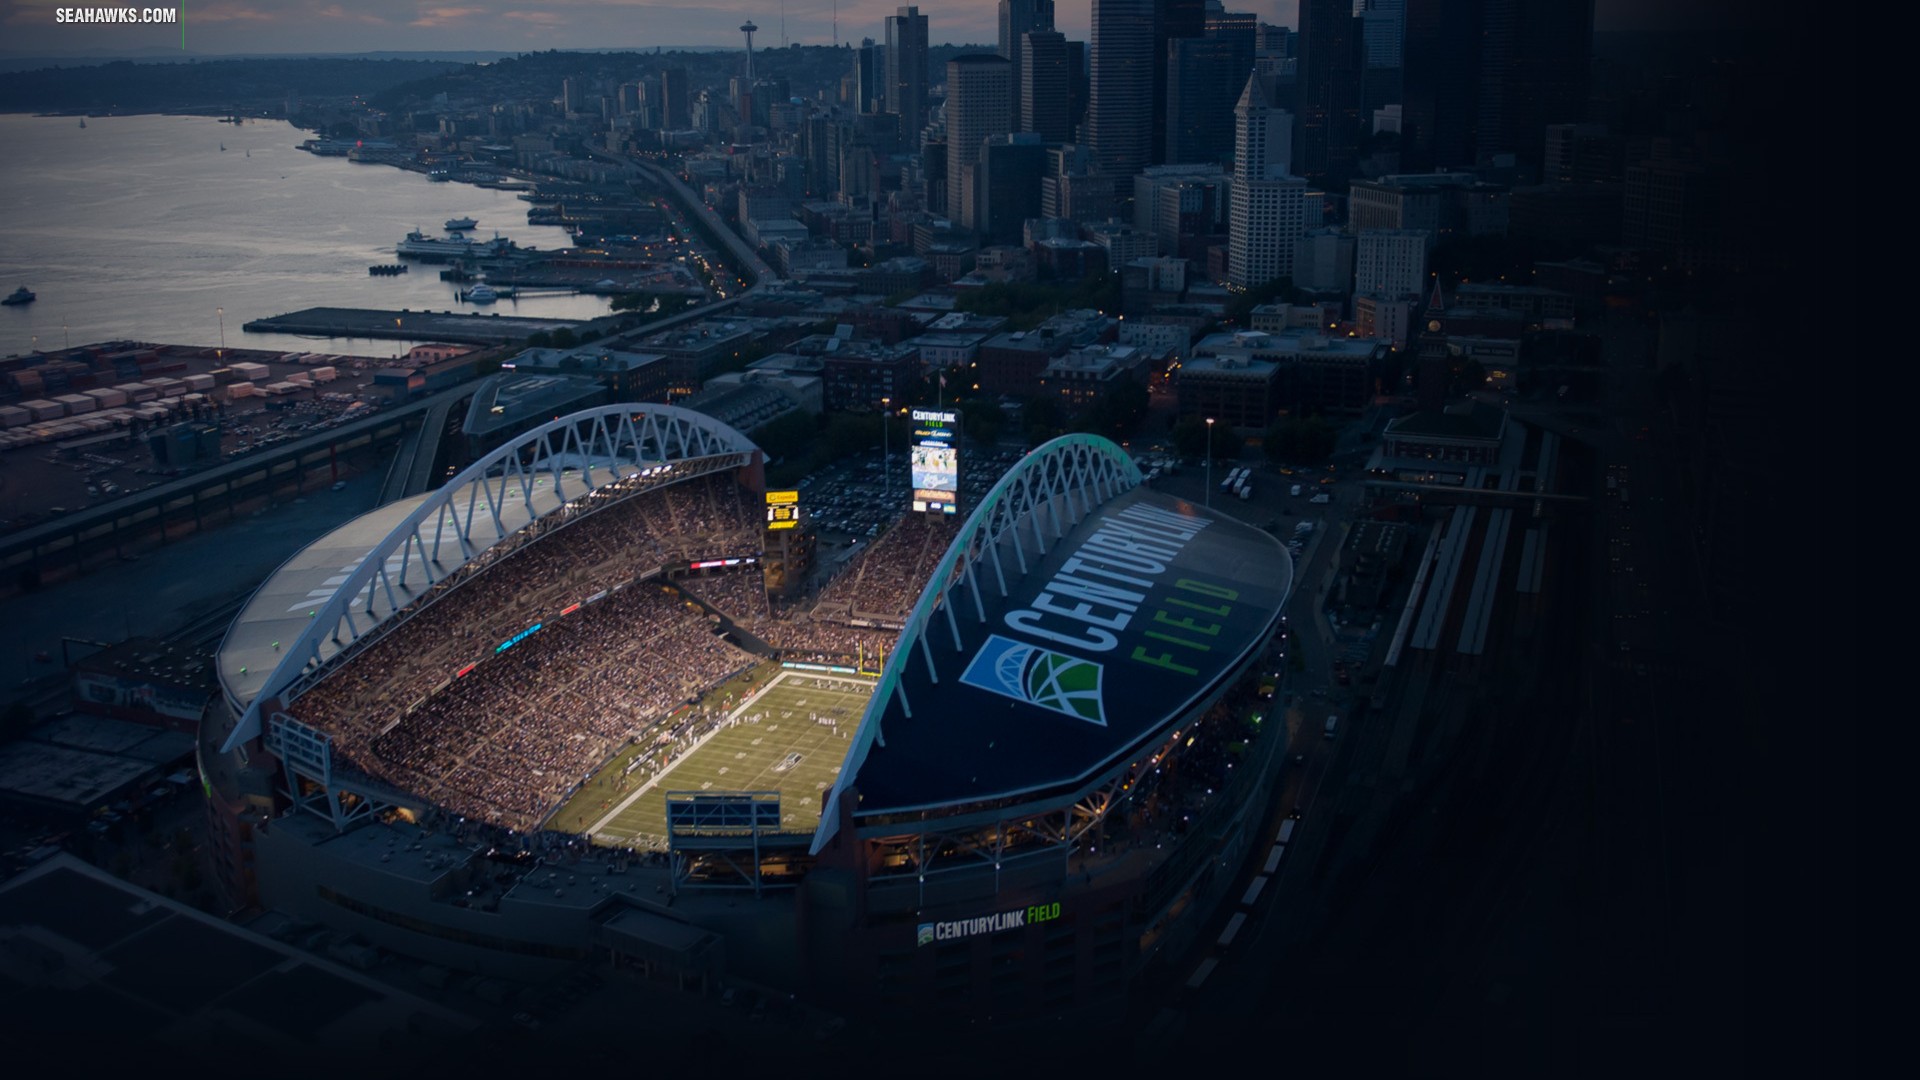 Seattle Seahawks Desktop Wallpaper